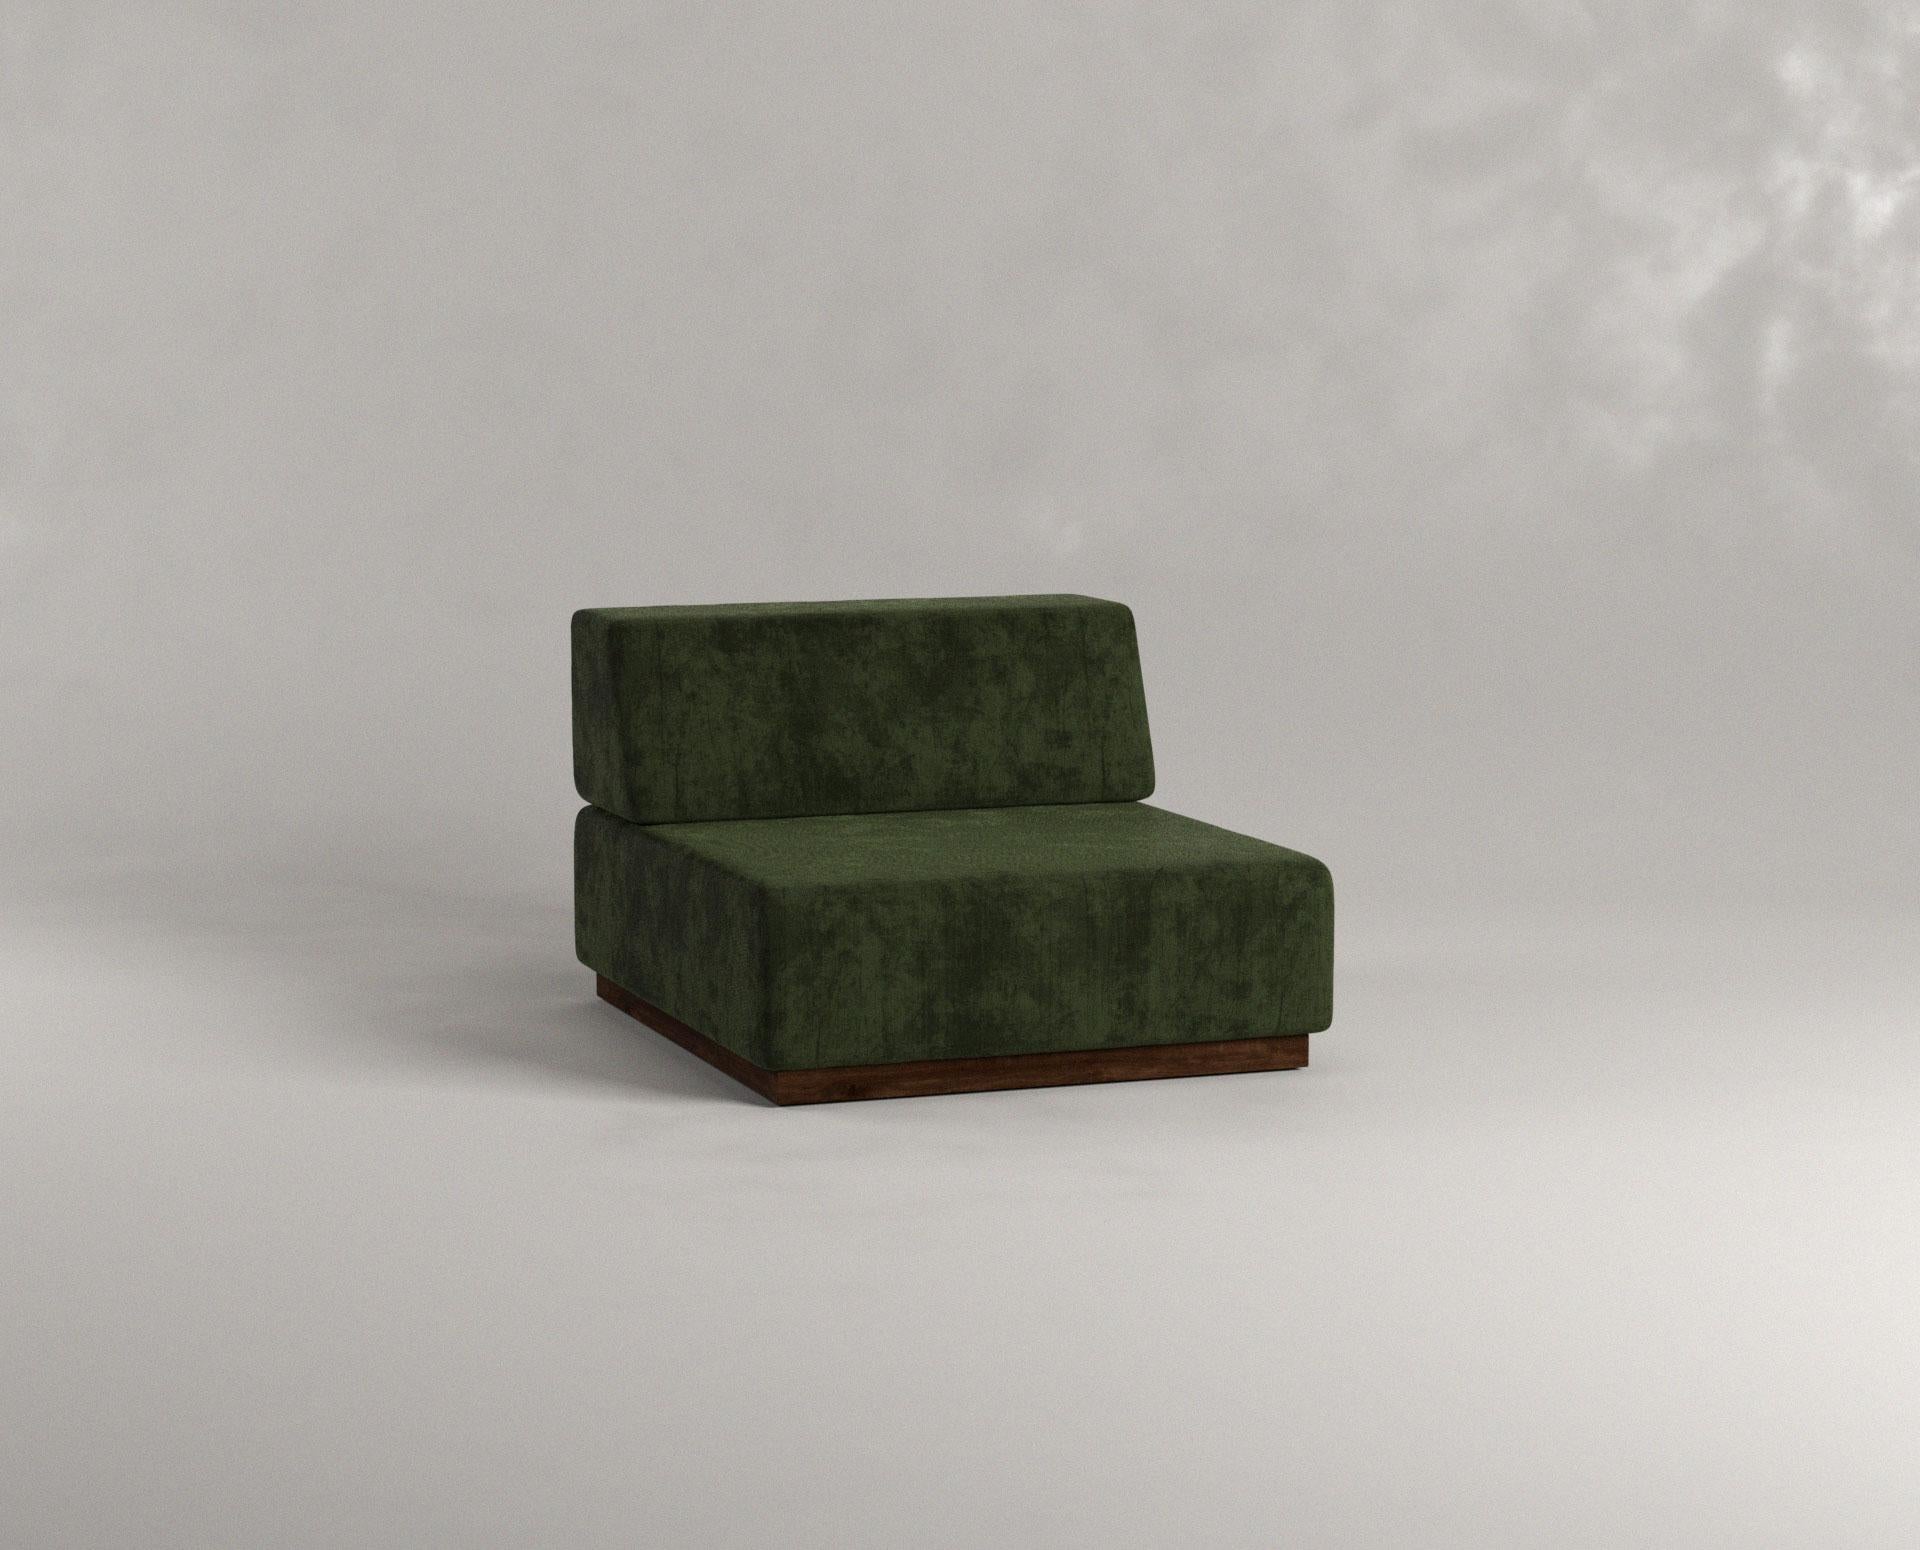 Nube Liege mit einem Sitzplatz oliv von Siete Studio
Abmessungen: T100 x B80 x H60 cm.
MATERIALIEN: Nussbaum, Kissen, Polsterung.

Nube zeichnet sich durch runde Kanten und weiche weiße Kissen aus und vermittelt das beruhigende Gefühl, in eine